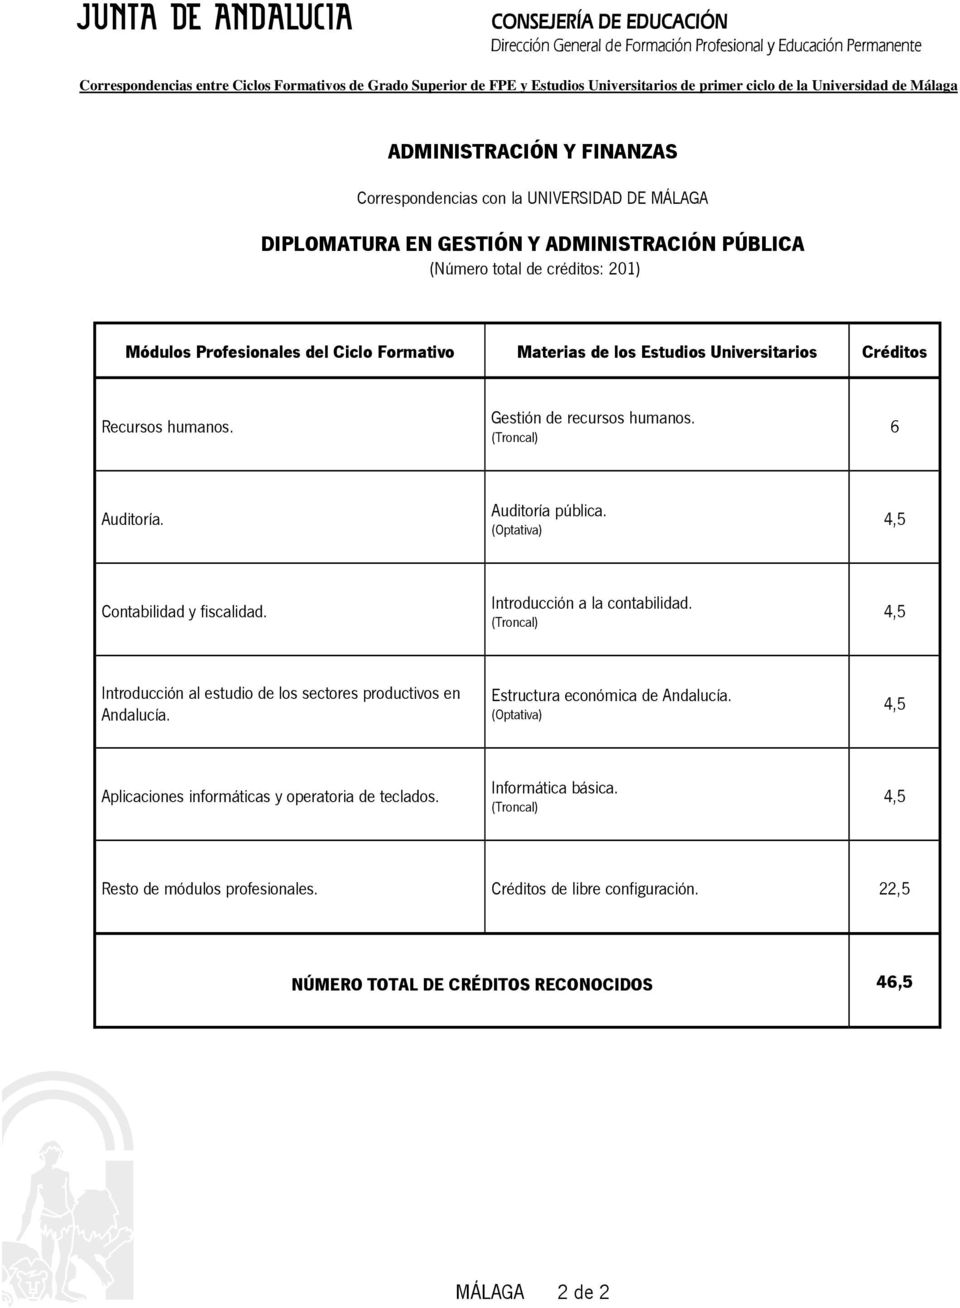 Introducción al estudio de los sectores productivos en Andalucía. Estructura económica de Andalucía.